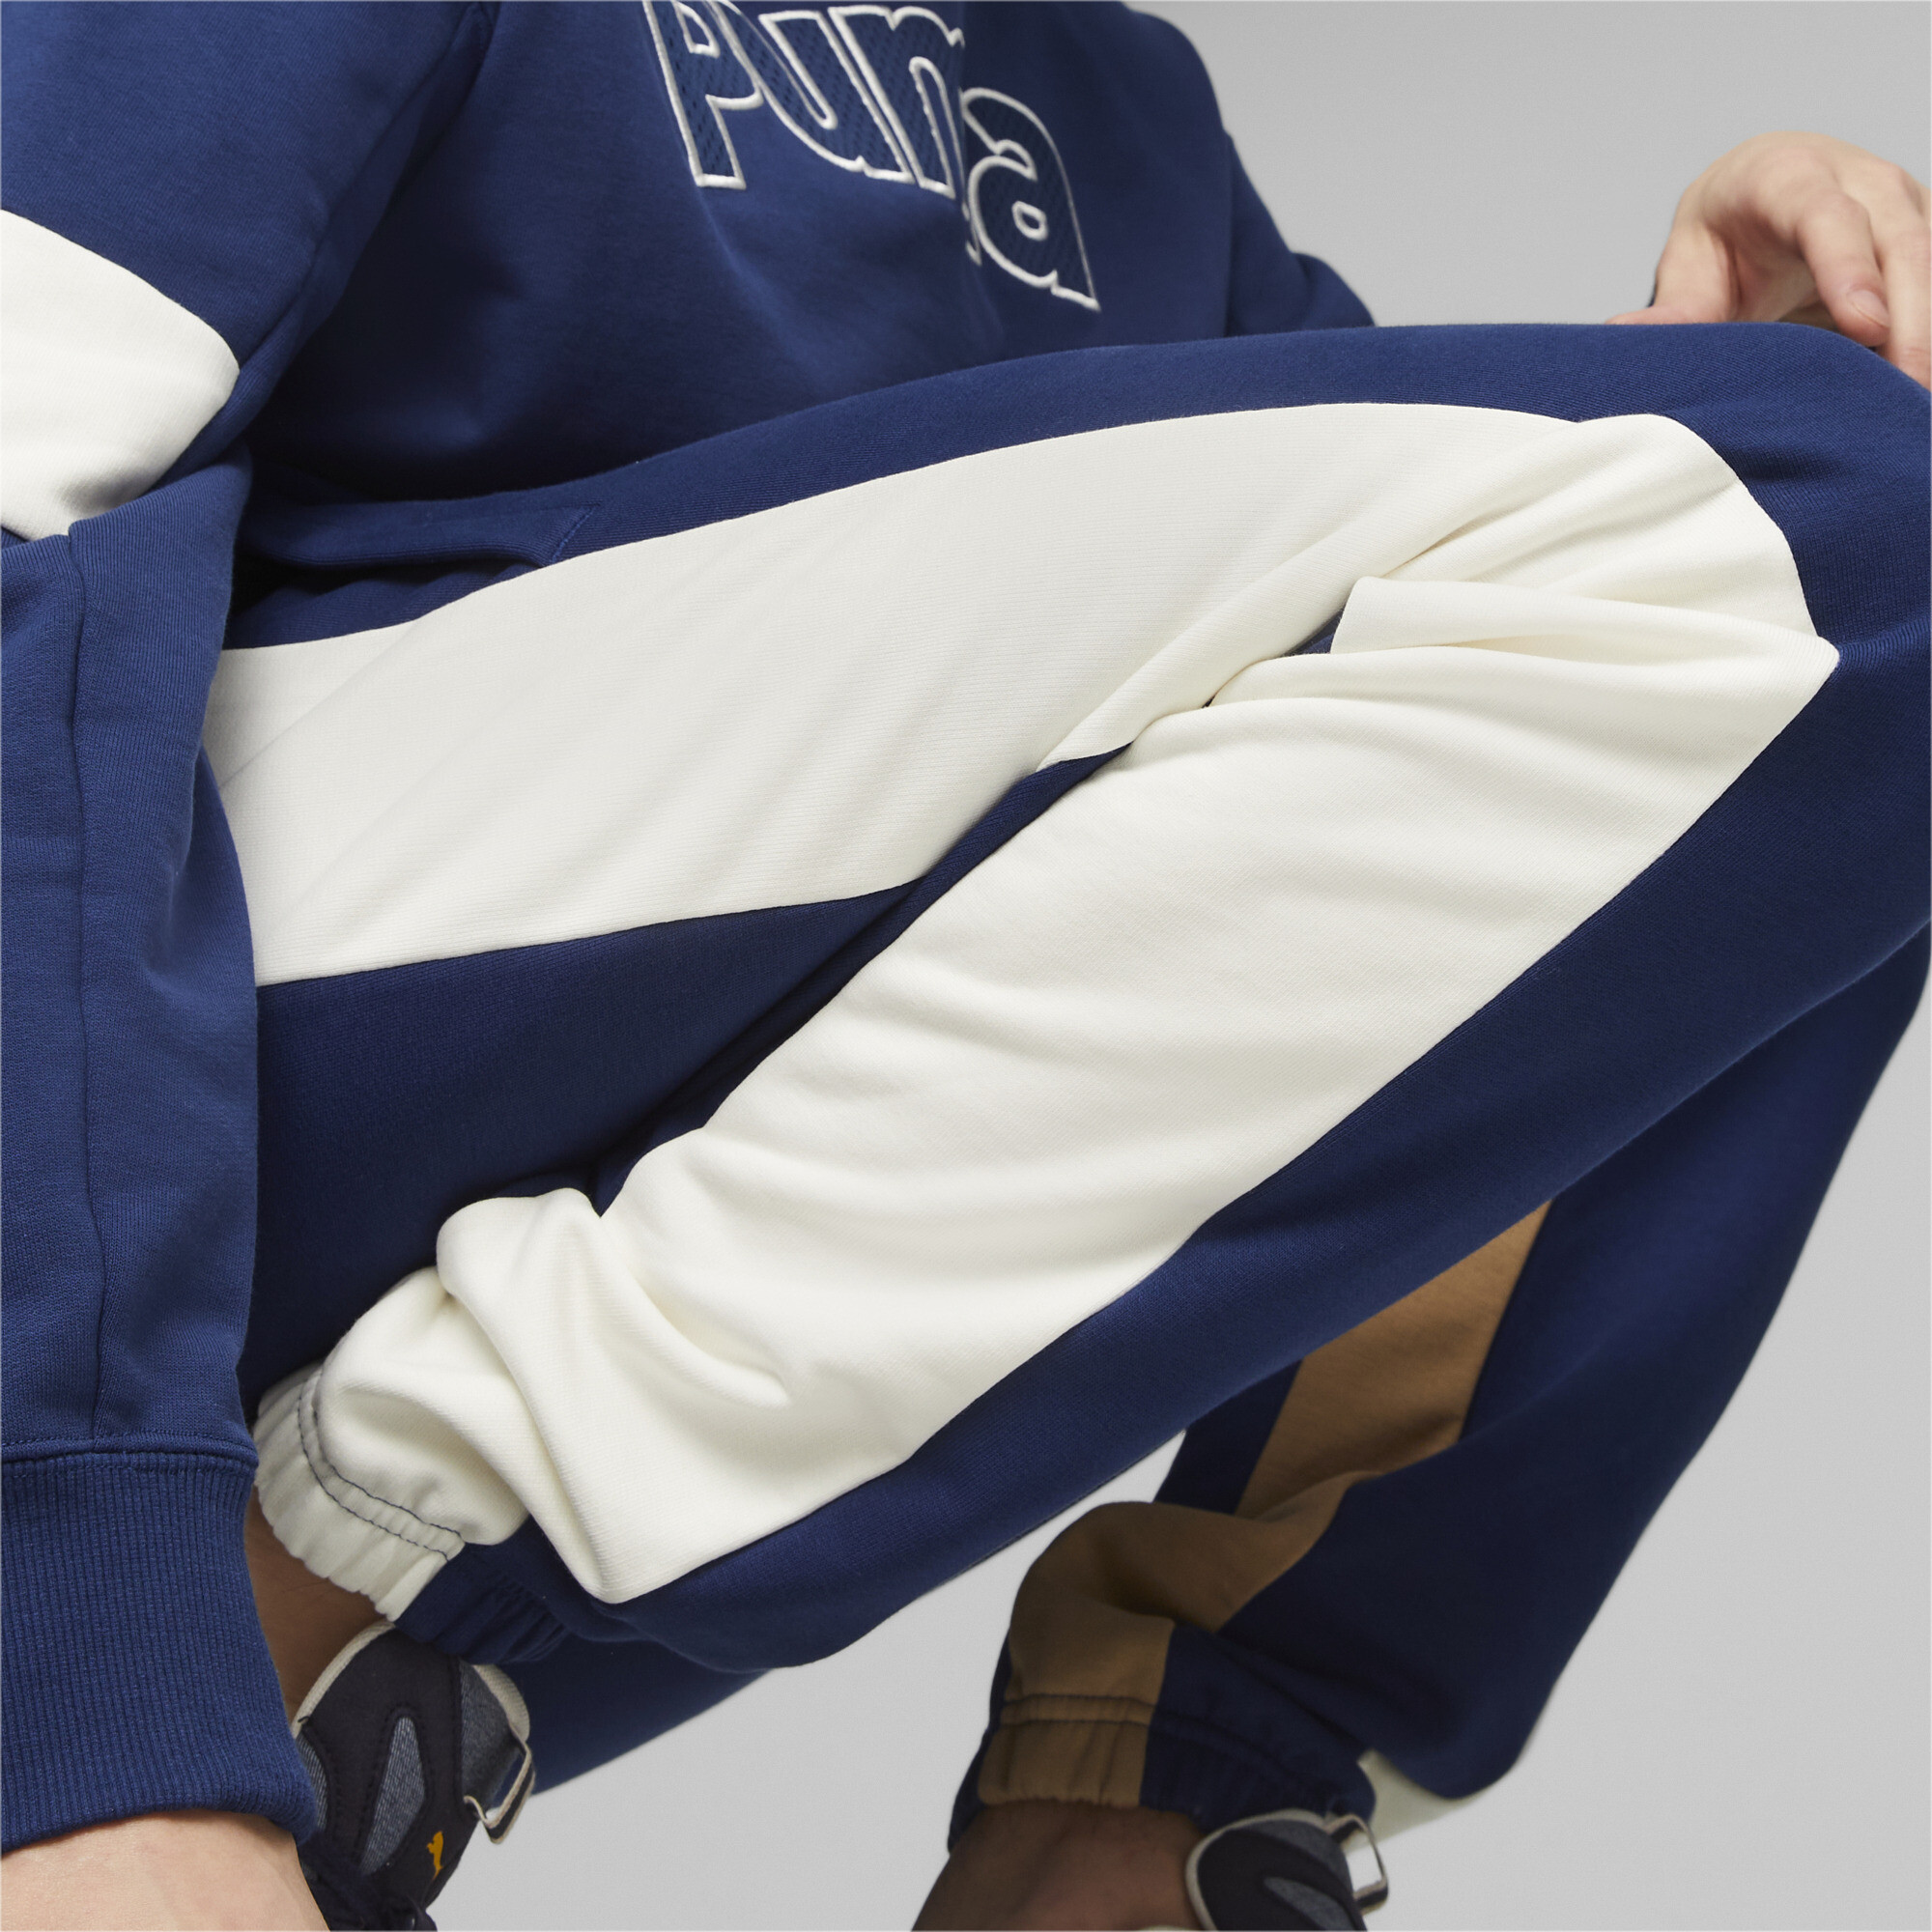 Men's Puma Classics Block's Sweatpants, Blue, Size XL, Clothing